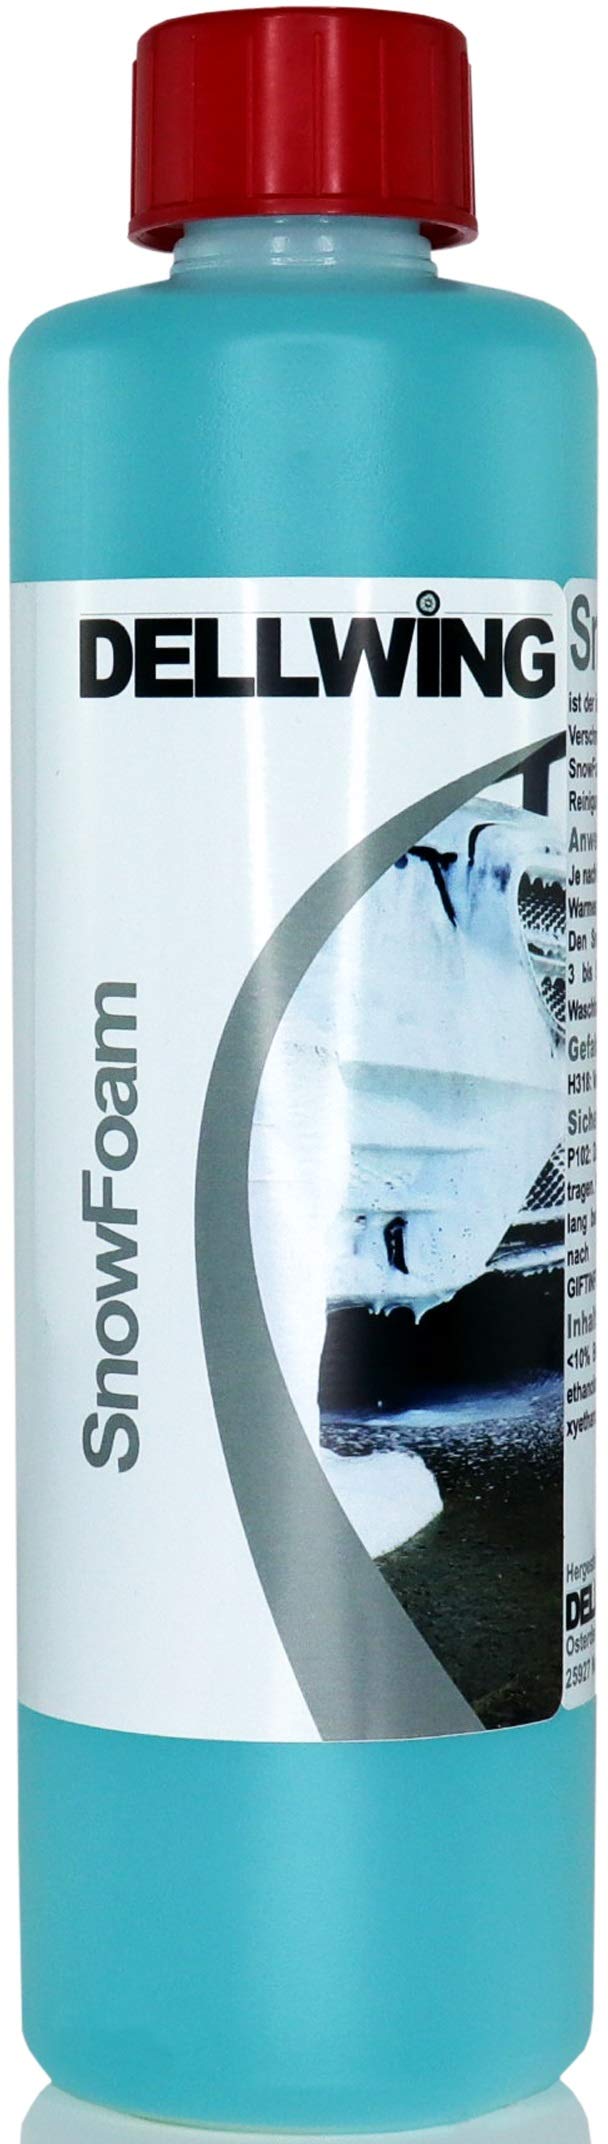 DELLWING Snow Foam WasserMelone 500 ml - Ideal für die sanfte Vorwäsche - Bildet eine dicke und langanhaltende Schaumdecke mit einem schönen Duft von DELLWING